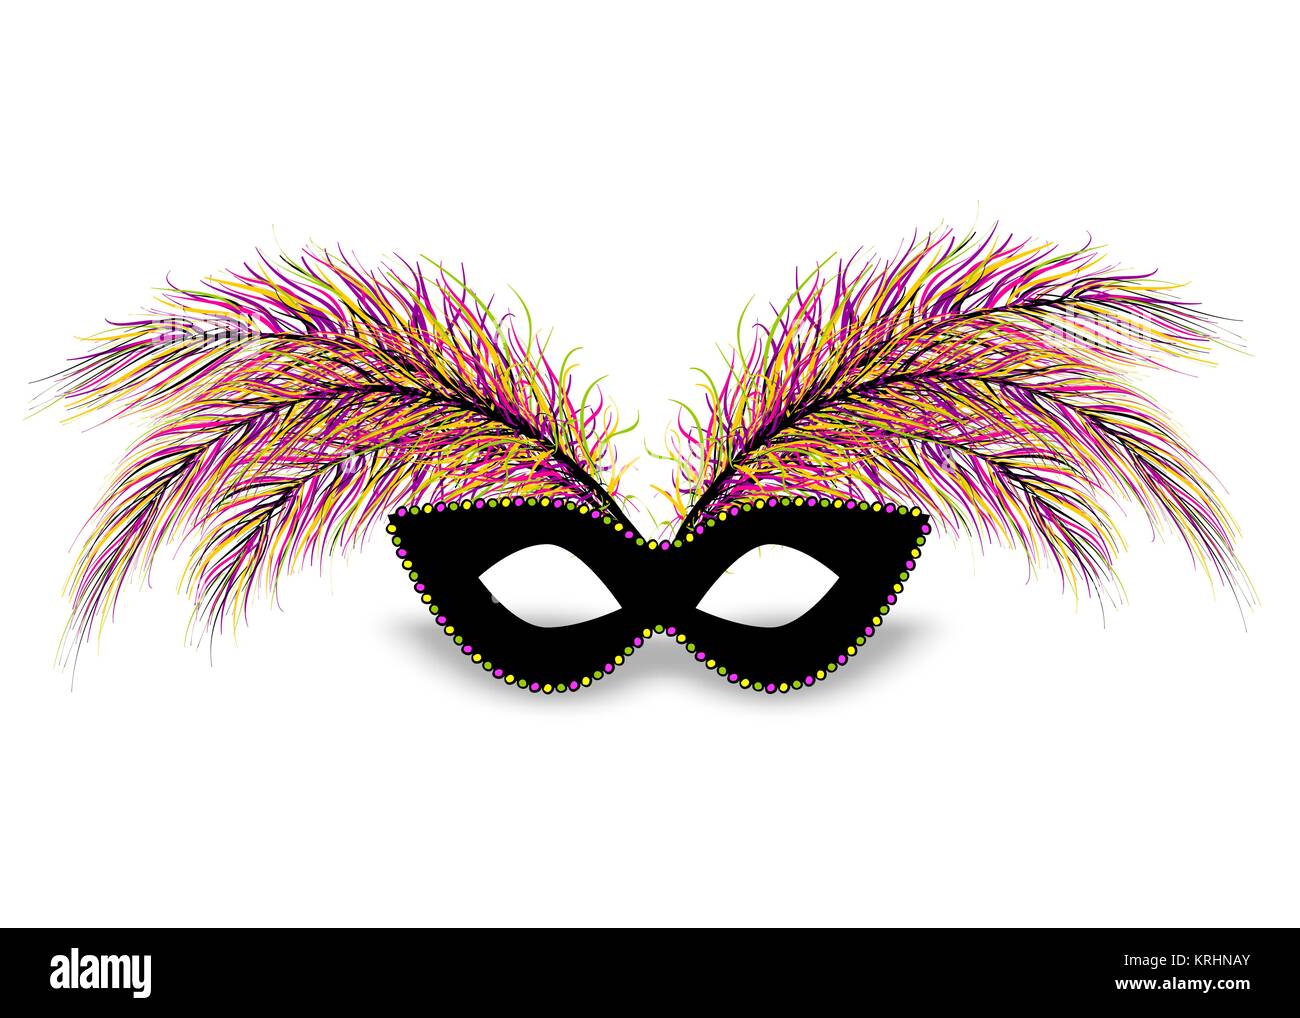 Realistische Farbe schwarz Maske Perle Halskette Feder. Isoliert weißer Hintergrund. Mardi Gras - Fat Tuesday Karneval Karneval in einem Französisch sprechenden Land. Stock Vektor